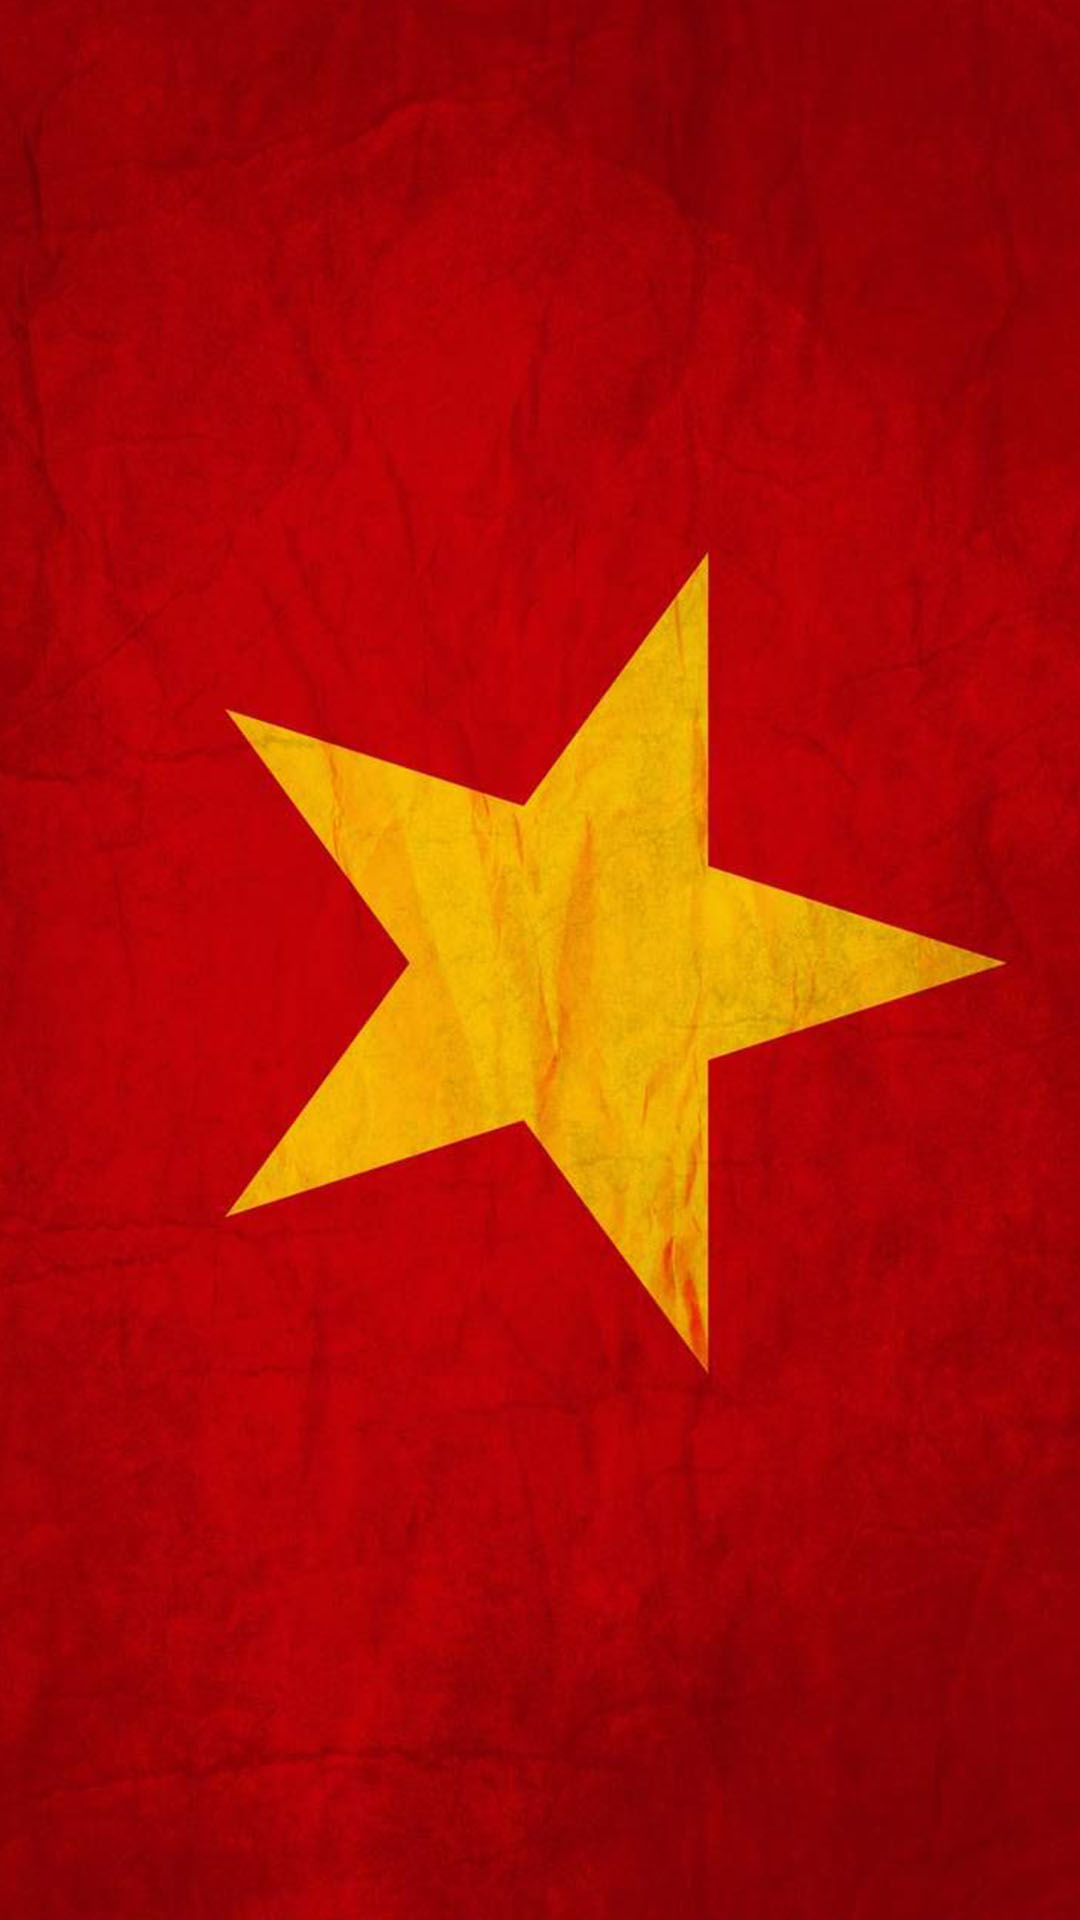 Ý nghĩa của cờ đỏ sao vàng là gì? Nếu bạn muốn tìm hiểu thêm về biểu tượng của quốc kỳ của Việt Nam, thì hãy khám phá bức ảnh này! Công cụ cần thiết để hiểu rõ hơn về quốc gia ta, hãy khám phá ý nghĩa cờ đỏ sao vàng!